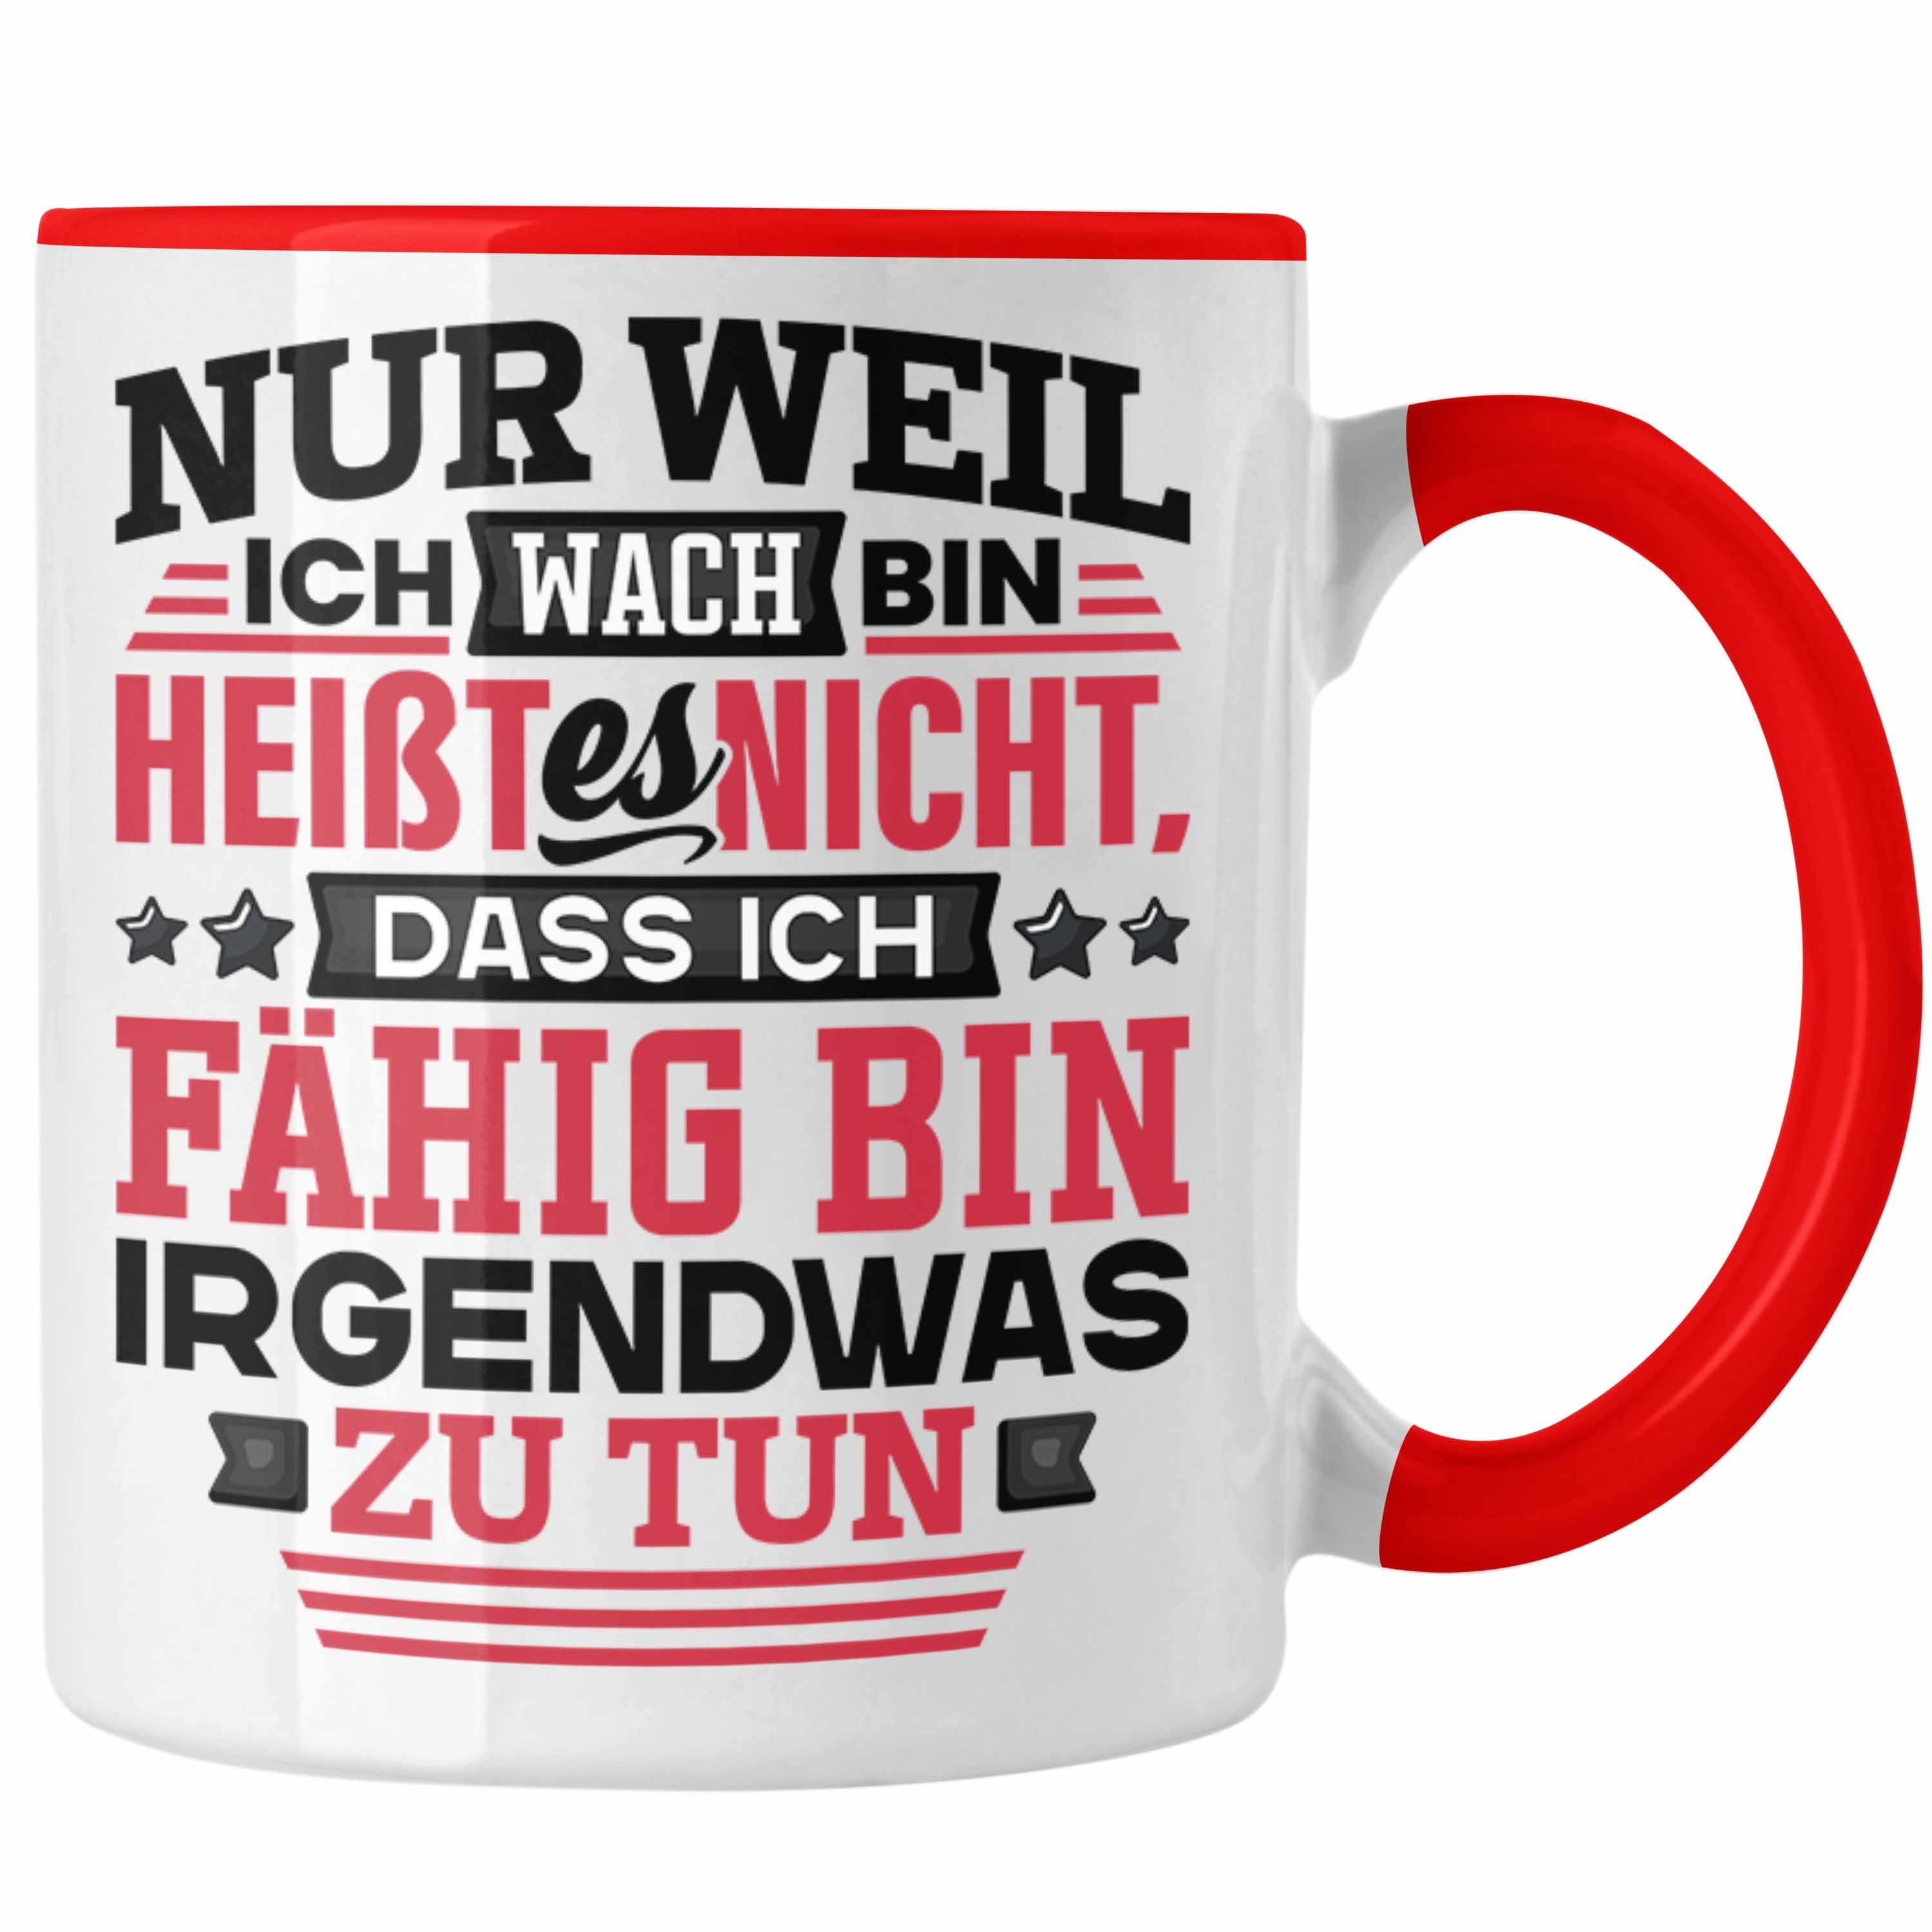 Trendation Tasse Lustiger Spruch Rot Bin Ich Wach Nur Kaffee-Becher Heißt Tasse Es Weil Nic